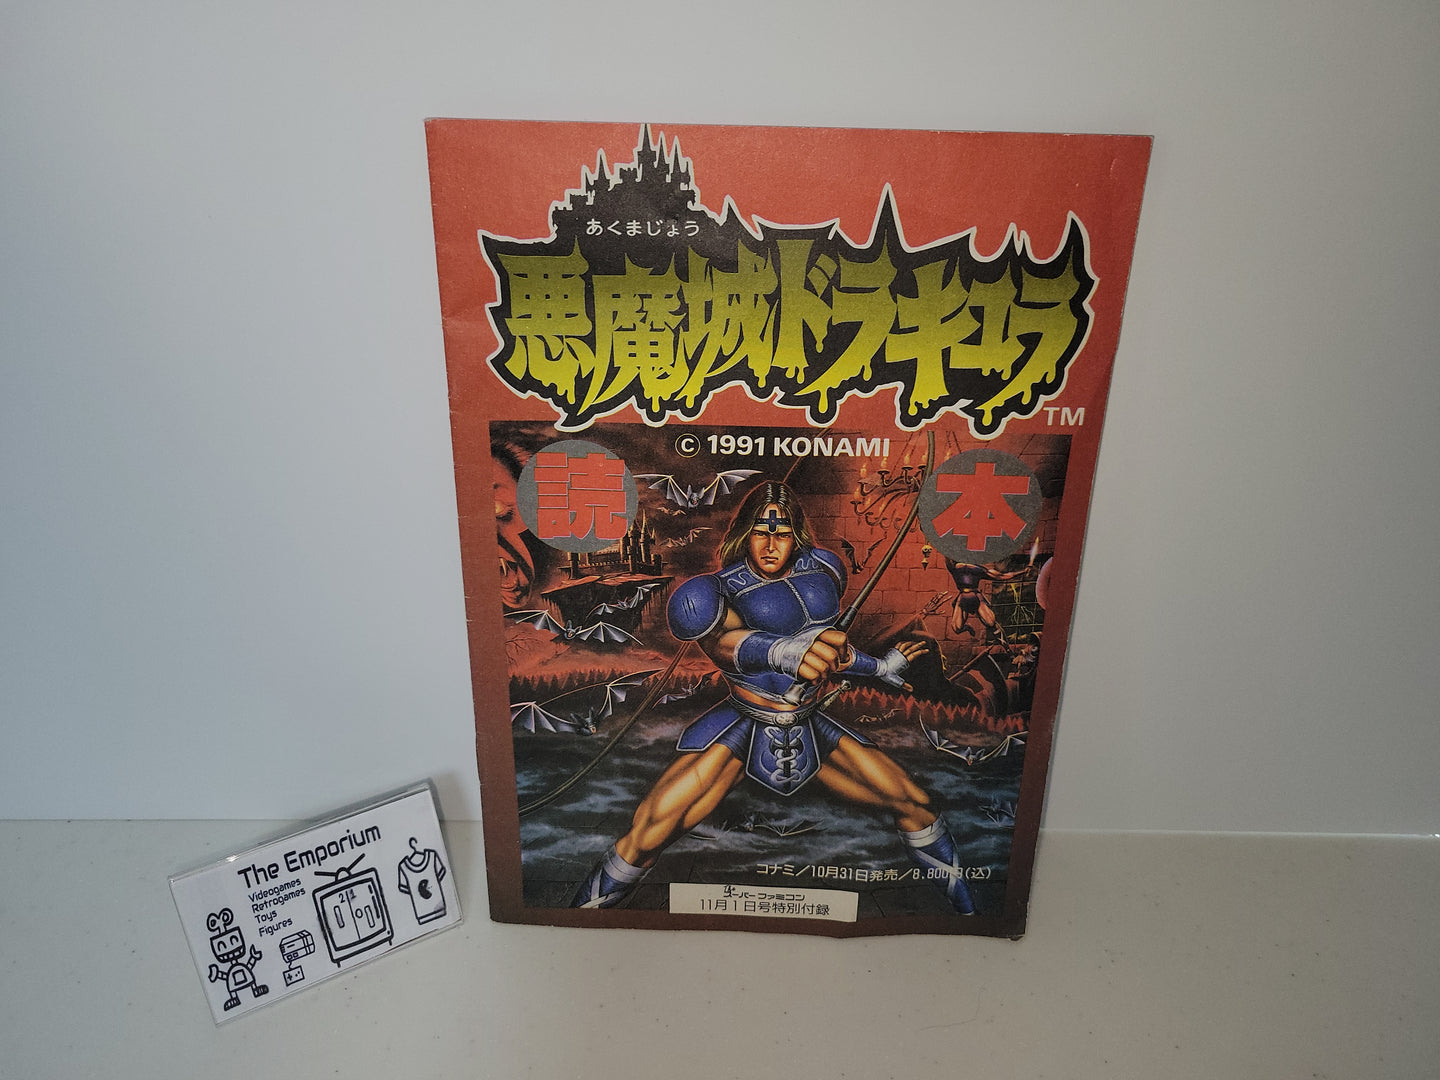 Akumajo Dracula Super Castlevania The Super Famicom November 1, 1991 issue - guide book MOOK